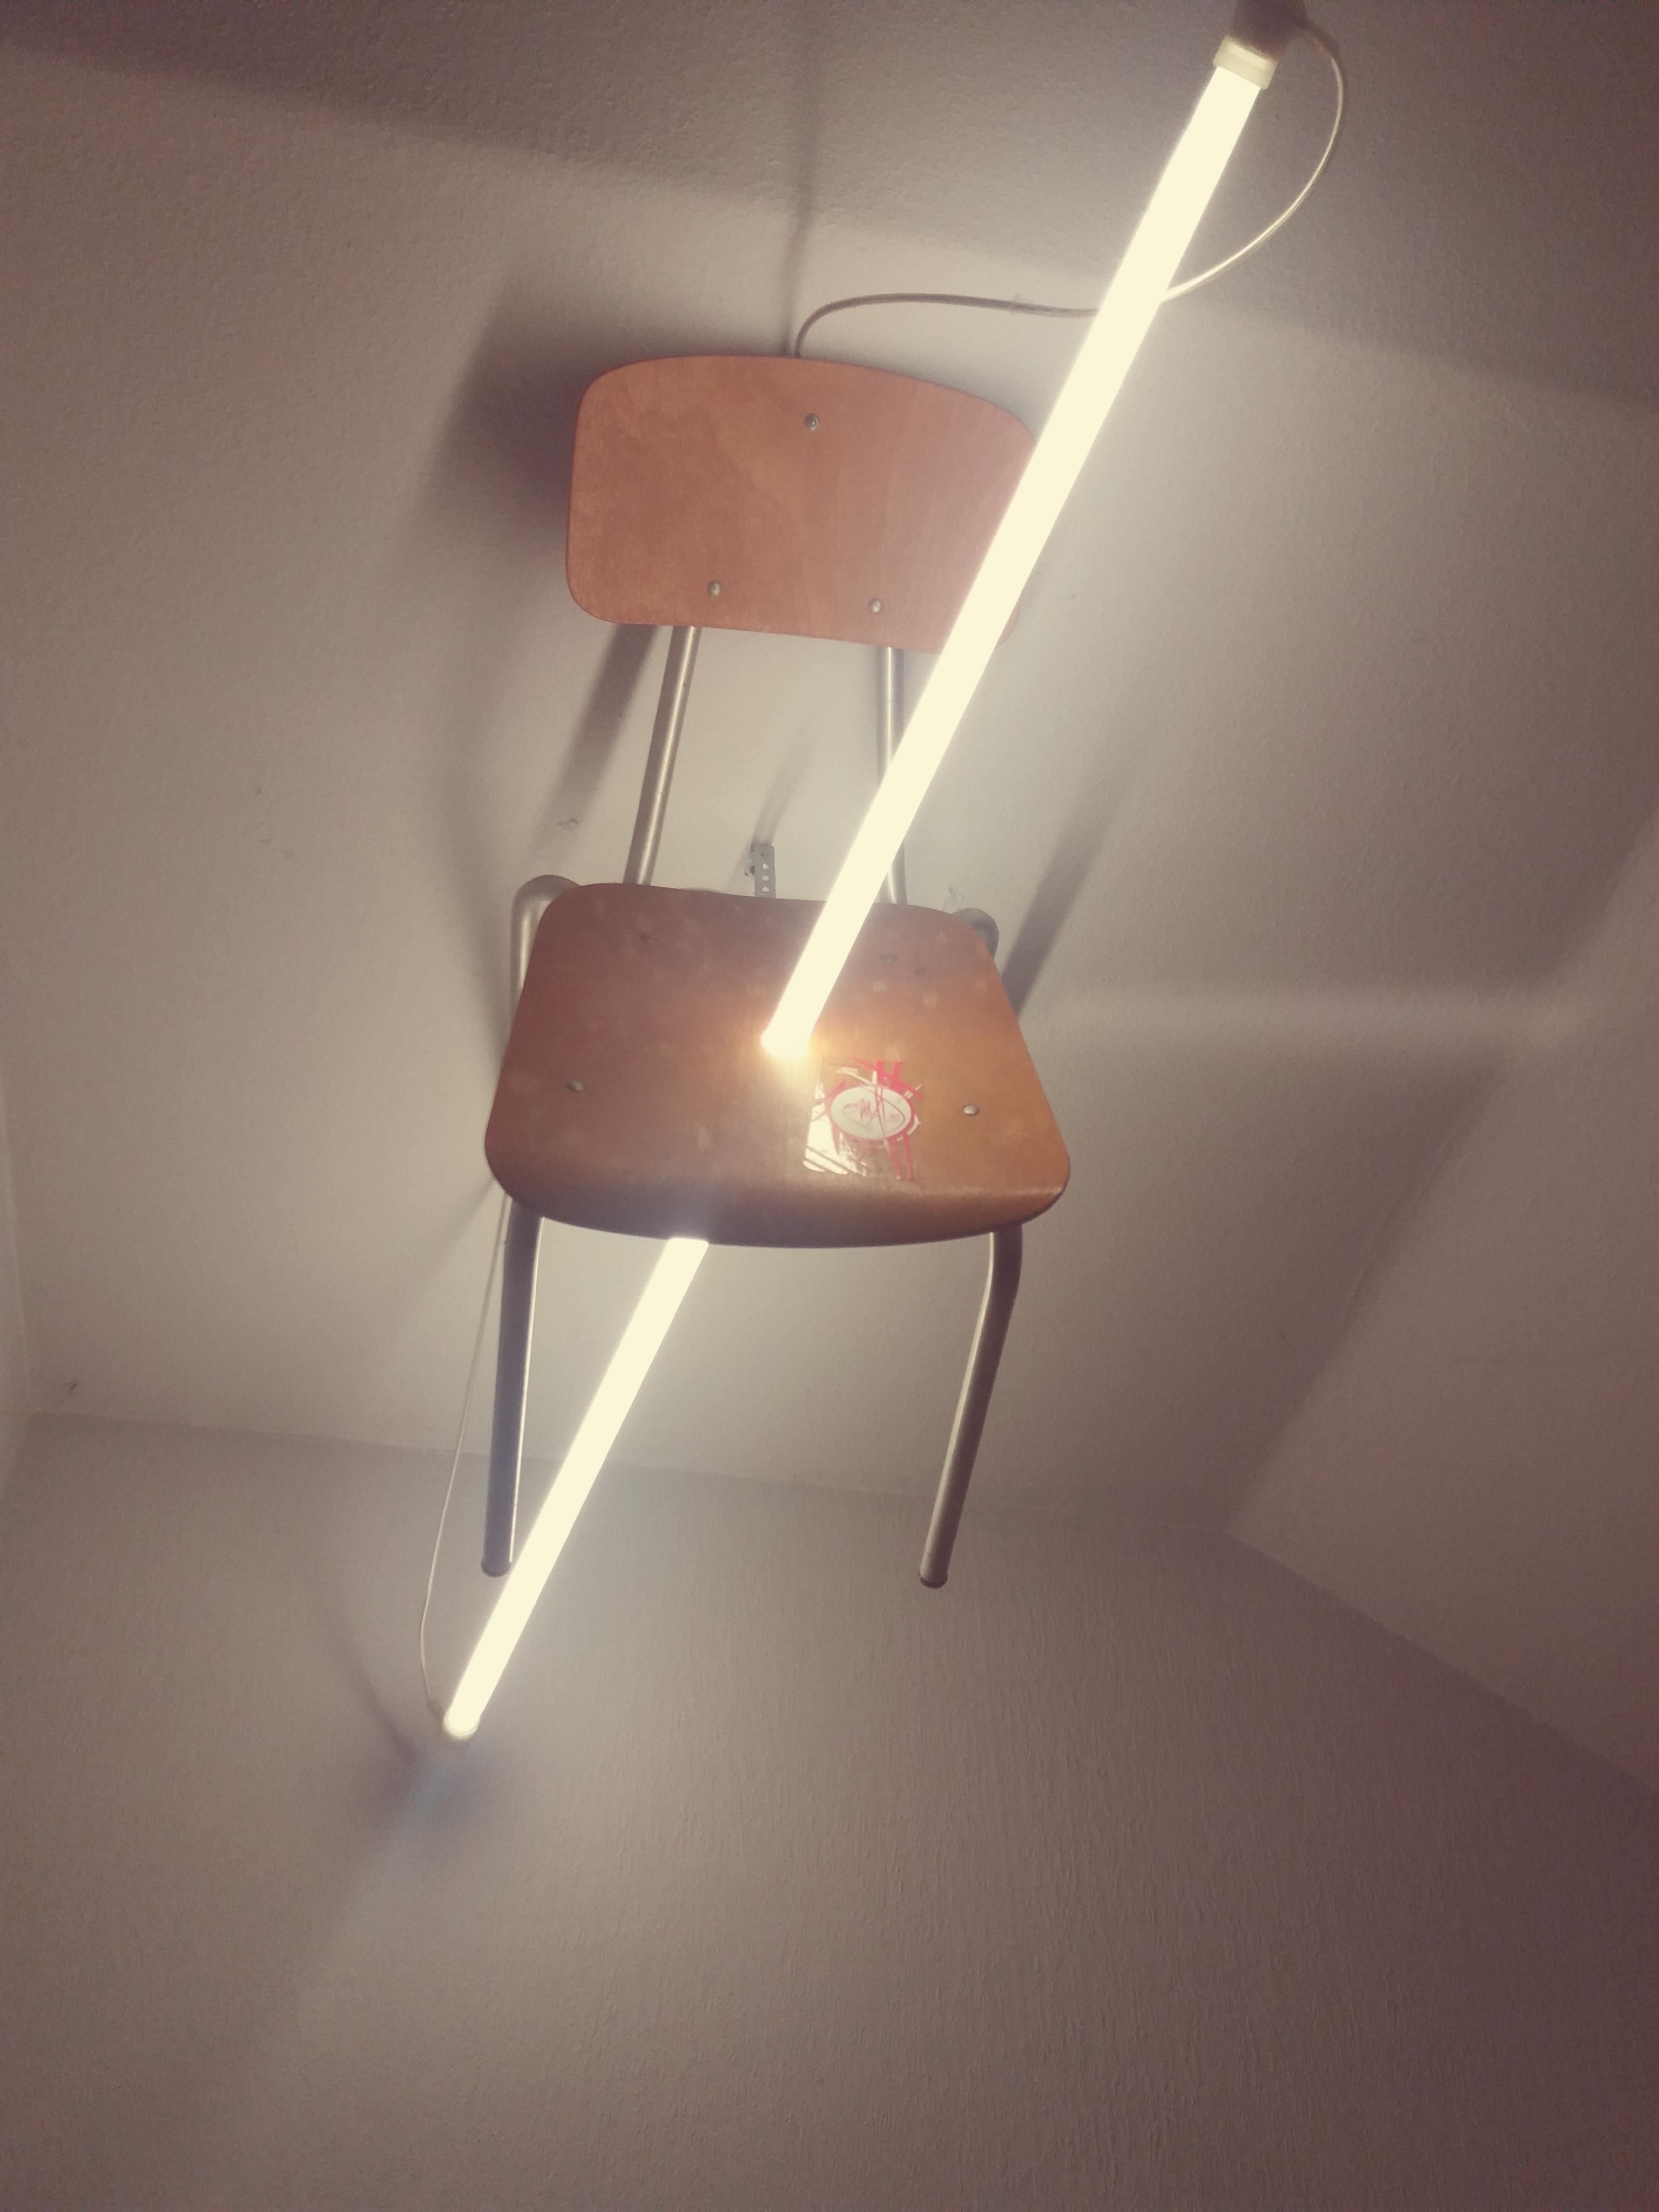 Wenn Dir die #Ideen ausgehen,
setz Dich hin-vielleicht geht Dir dann ein #Licht auf😉
#Deckenlampe in einer Fabrik